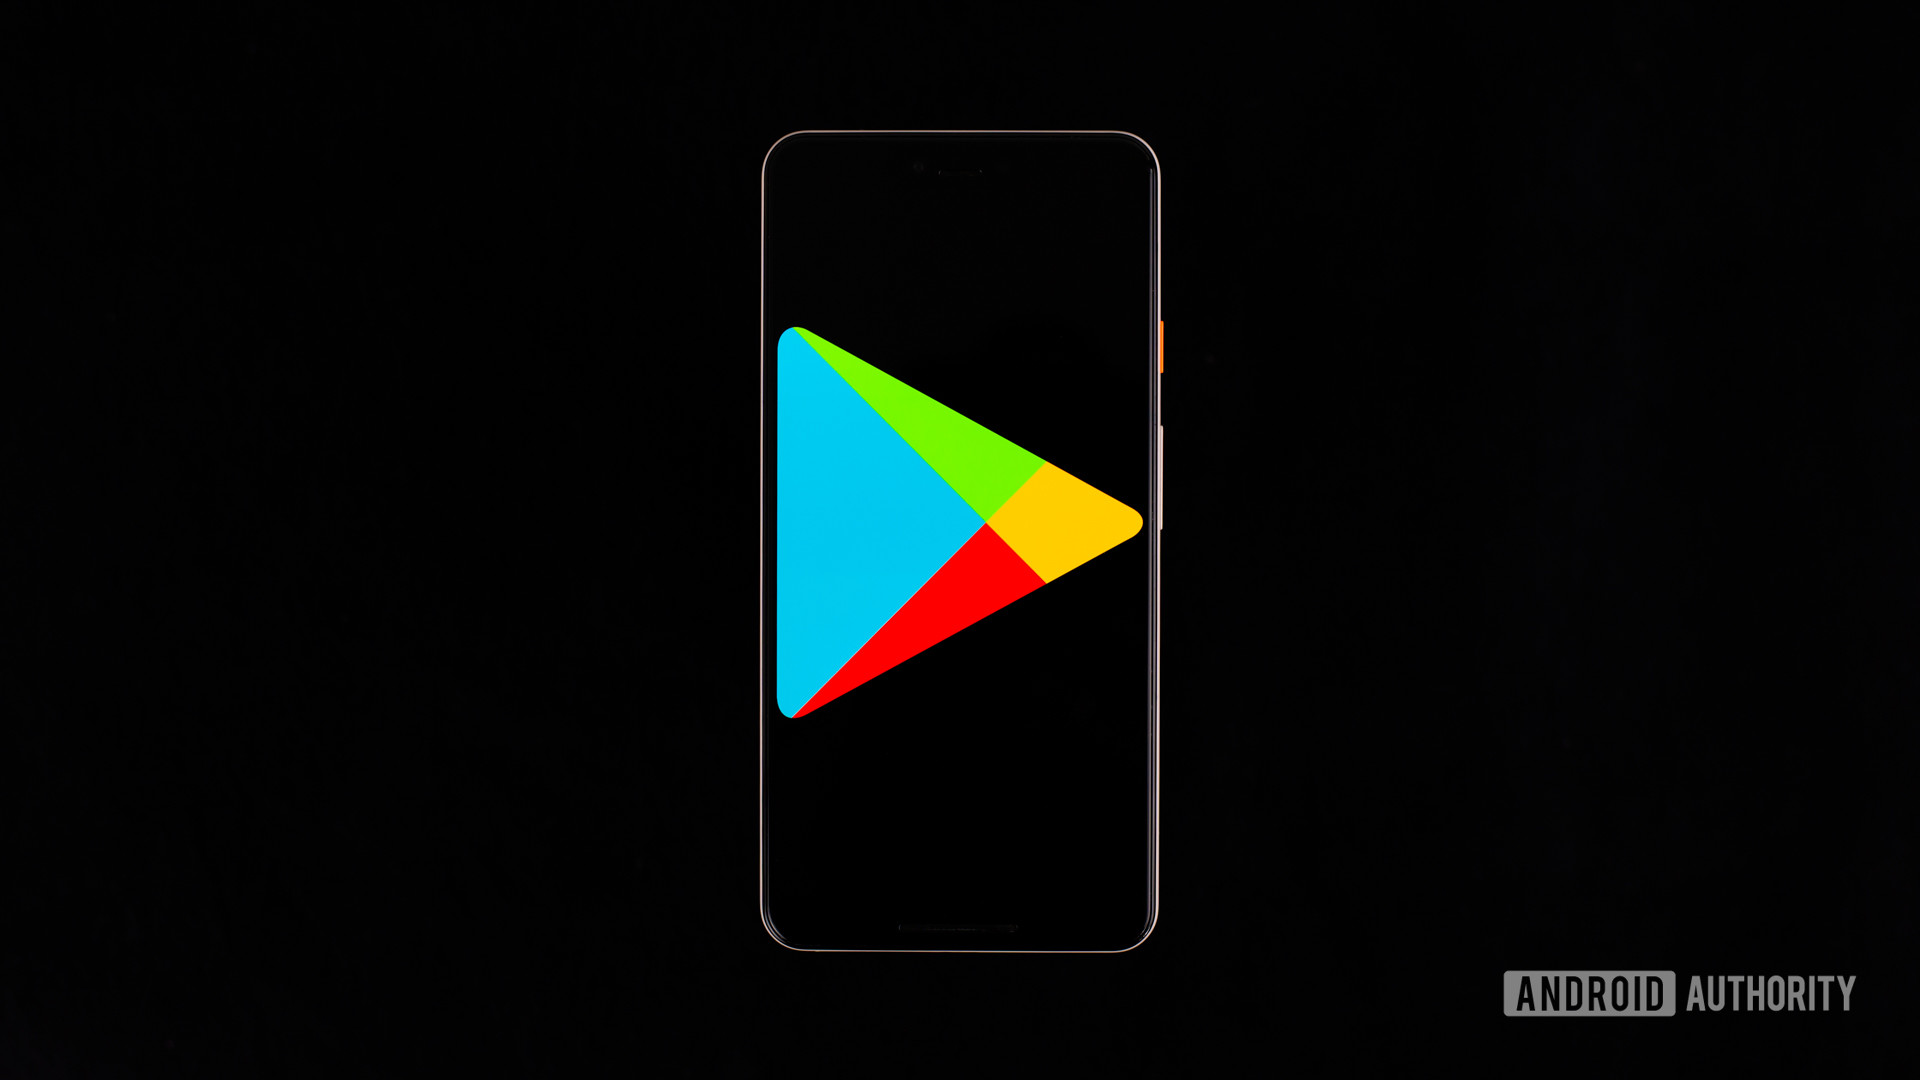 Google Play Store en el teléfono inteligente Stock Image